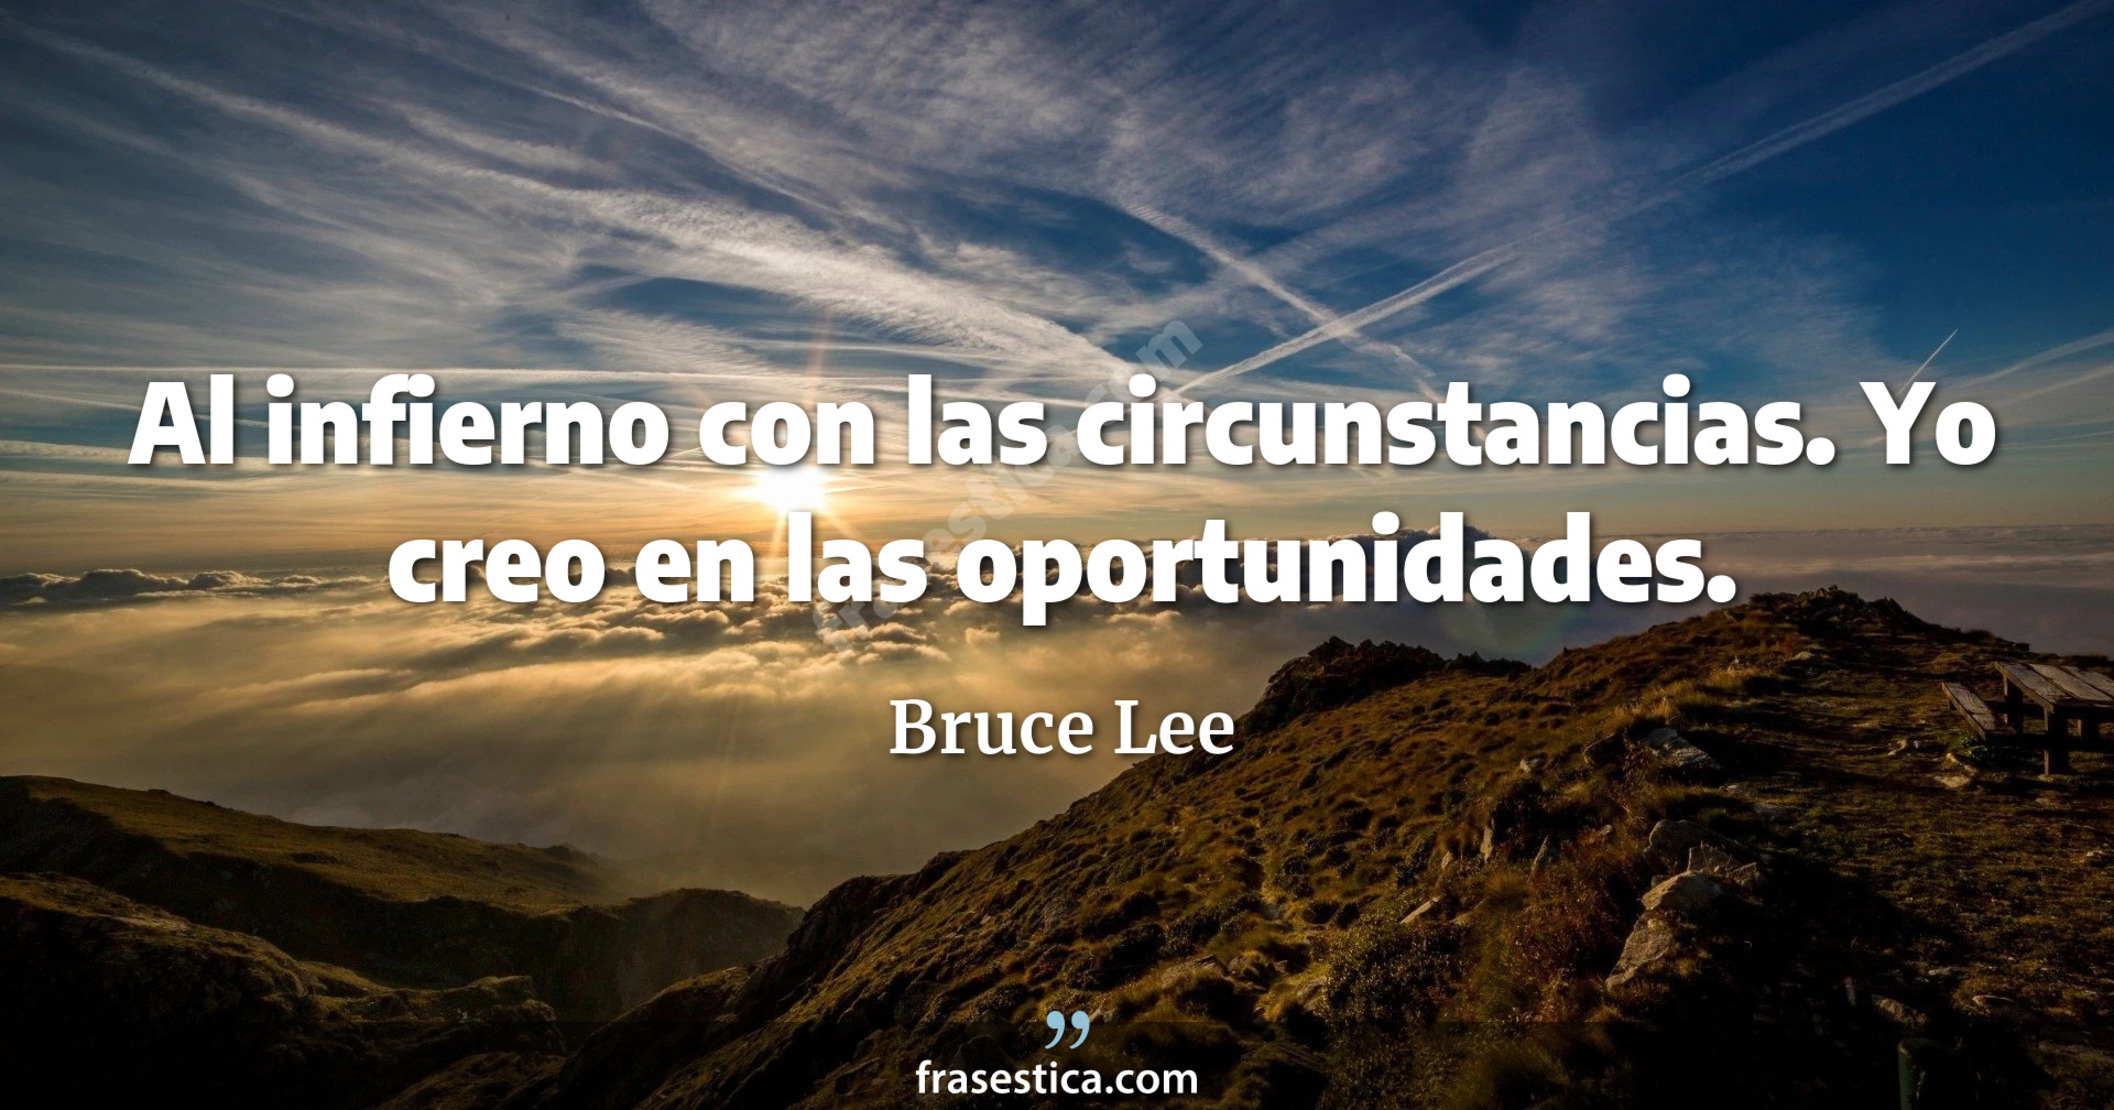 Al infierno con las circunstancias. Yo creo en las oportunidades. - Bruce Lee